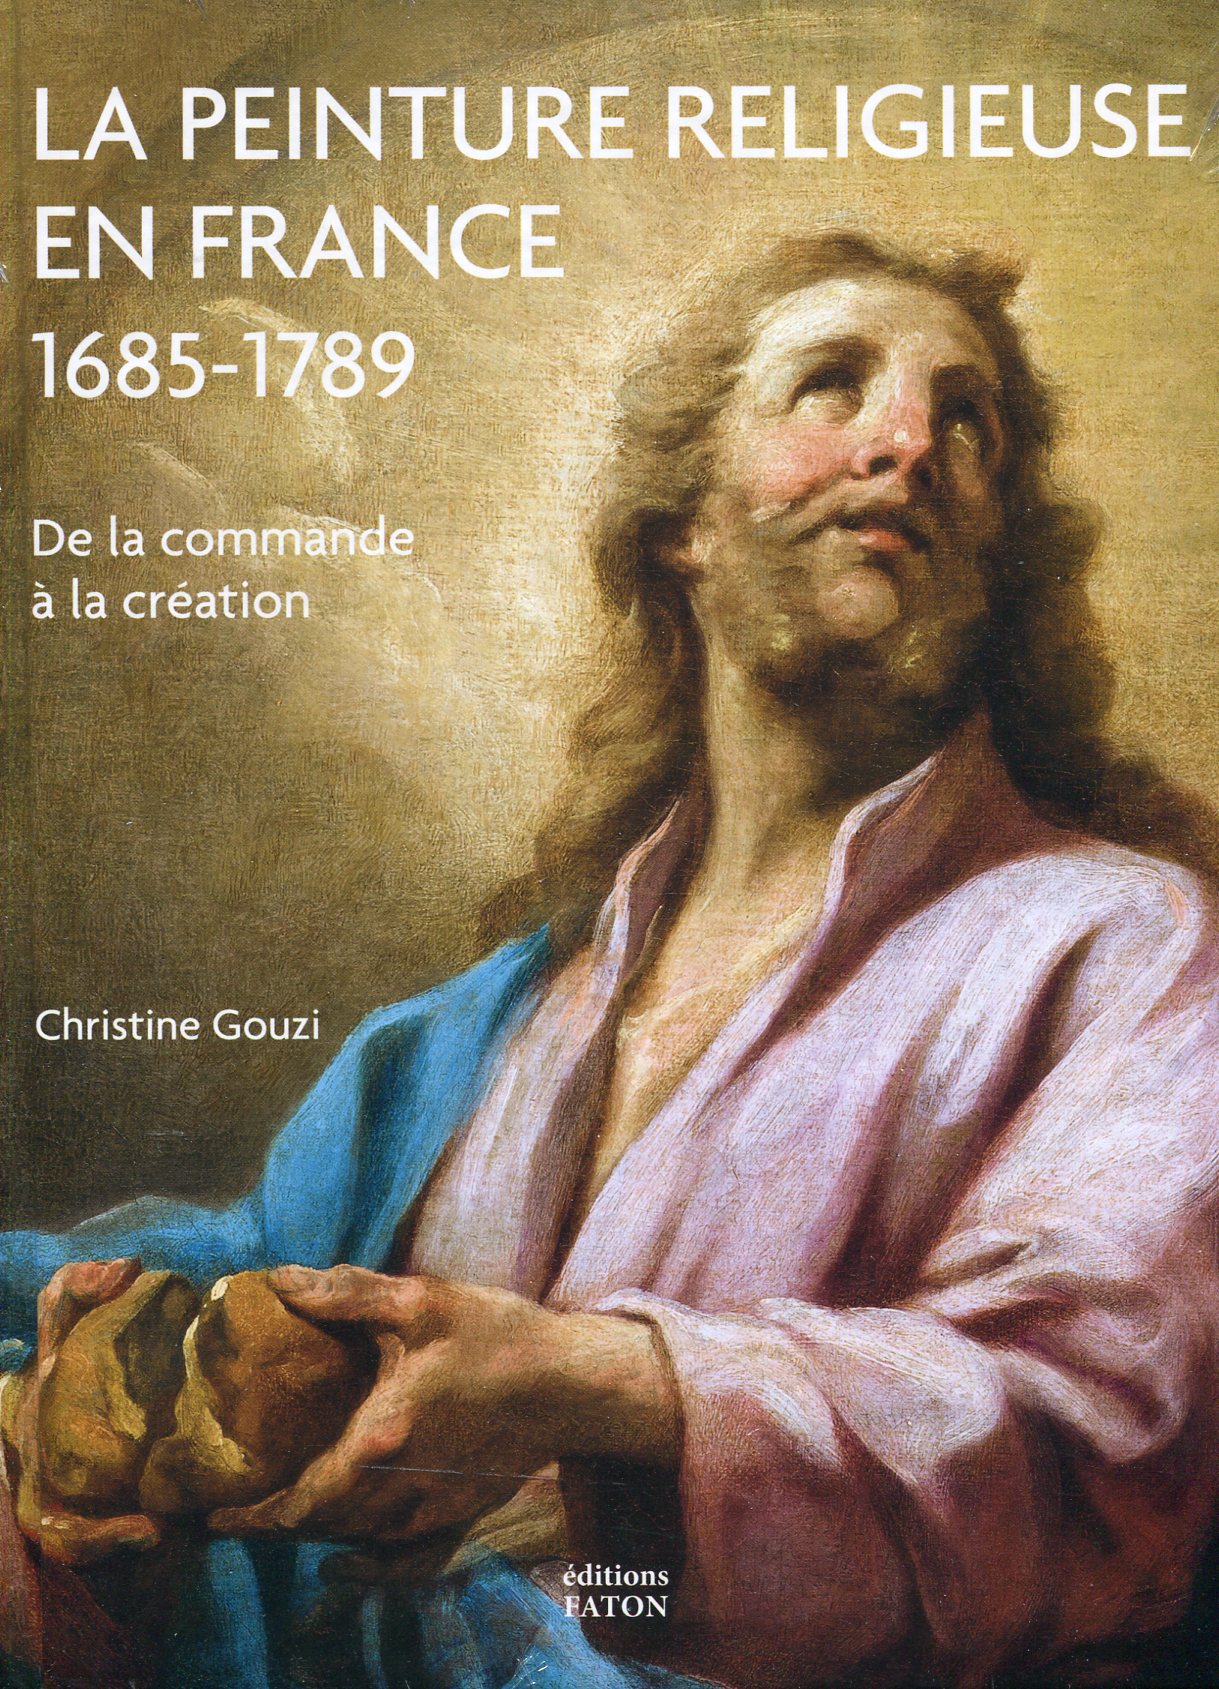 La peinture religieuse en France, 1685-1789. De la commande à la création, 2019, 480 p., 300 ill.